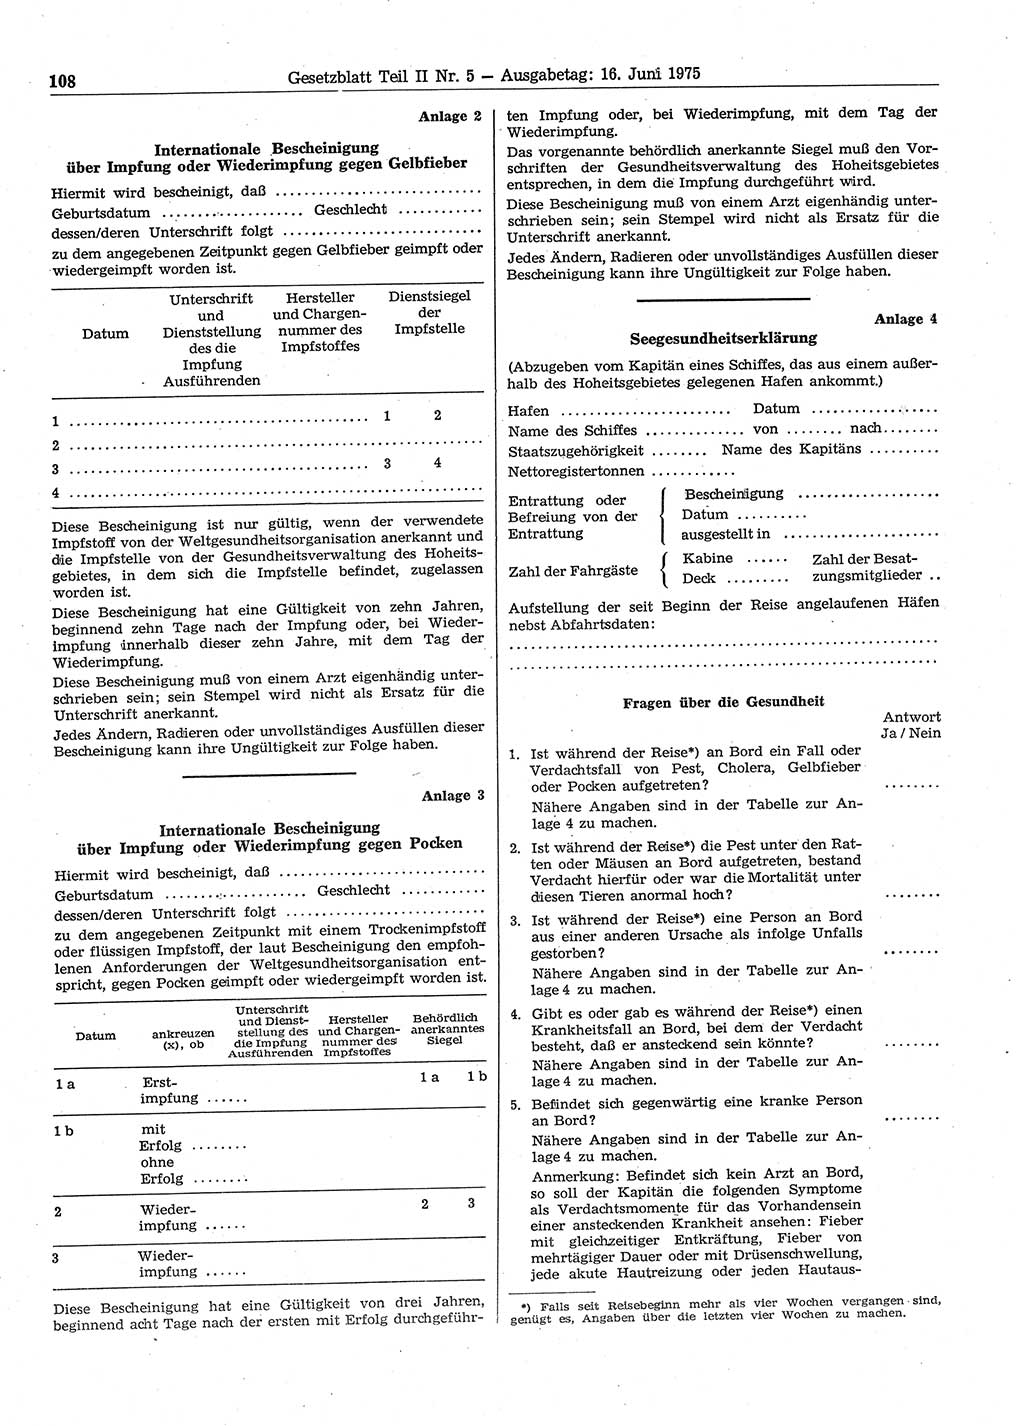 Gesetzblatt (GBl.) der Deutschen Demokratischen Republik (DDR) Teil ⅠⅠ 1975, Seite 108 (GBl. DDR ⅠⅠ 1975, S. 108)